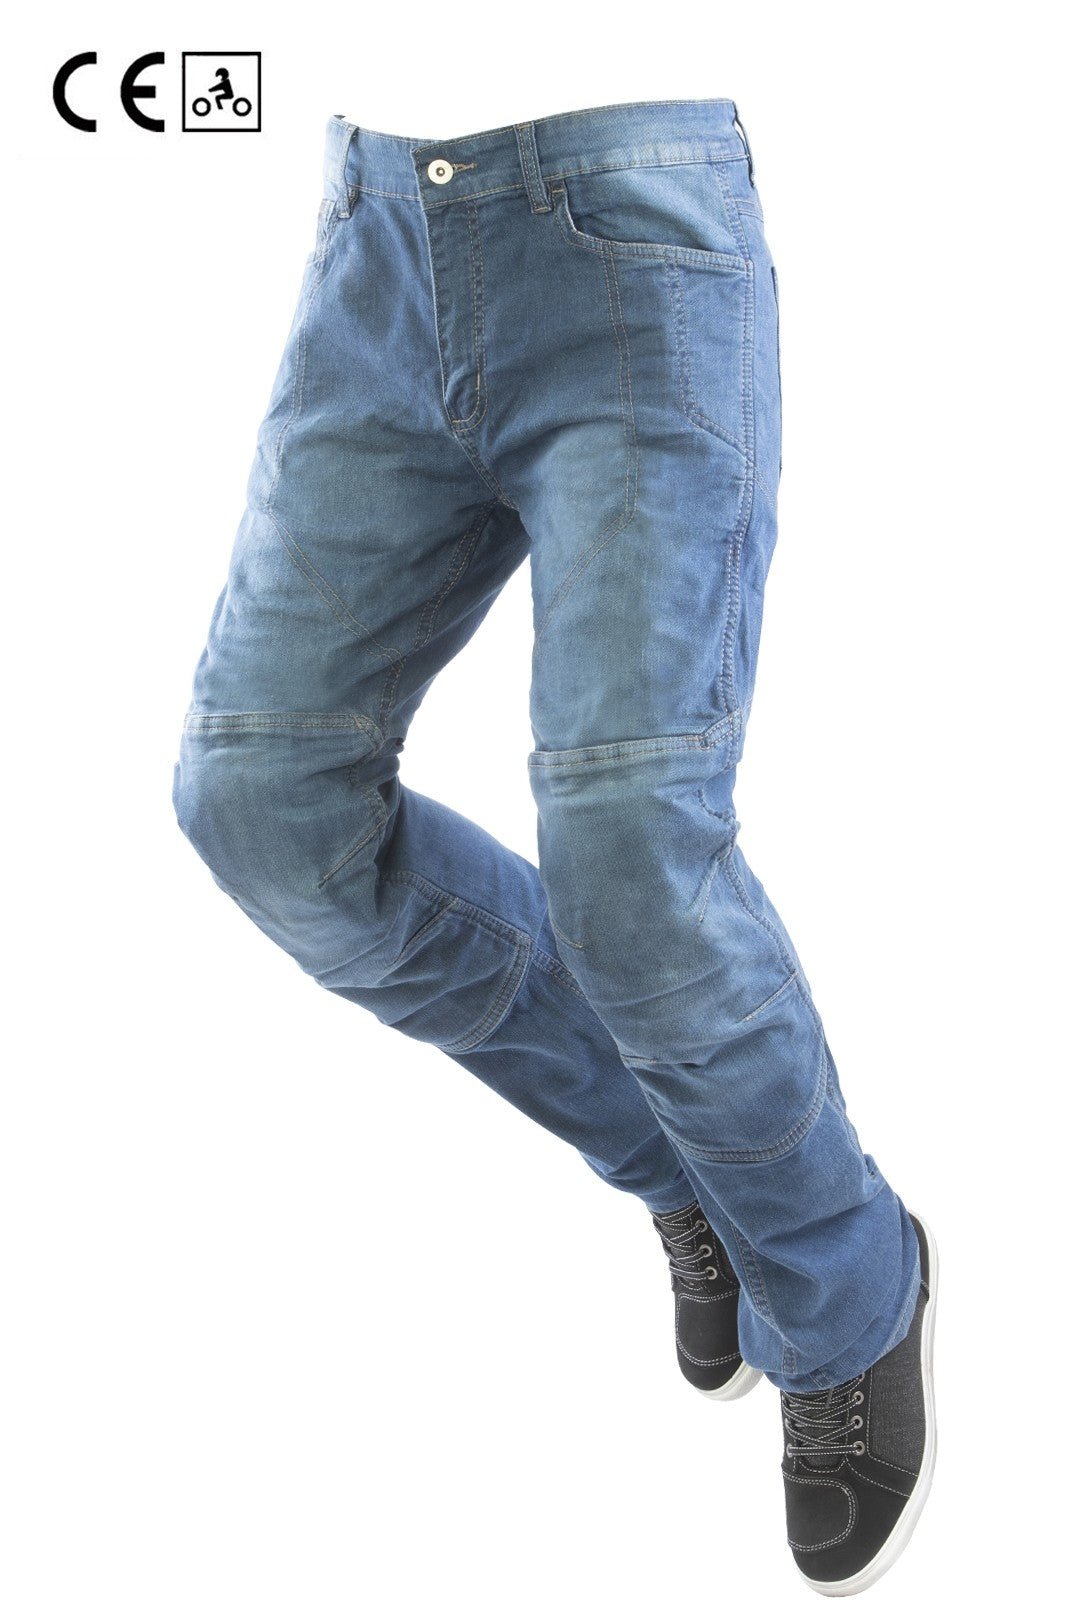 Jeans moto OJ DEFENDER MAN uomo elasticizzato con aramide, protezioni rimovibili - OnTheRoad.shop - OJ